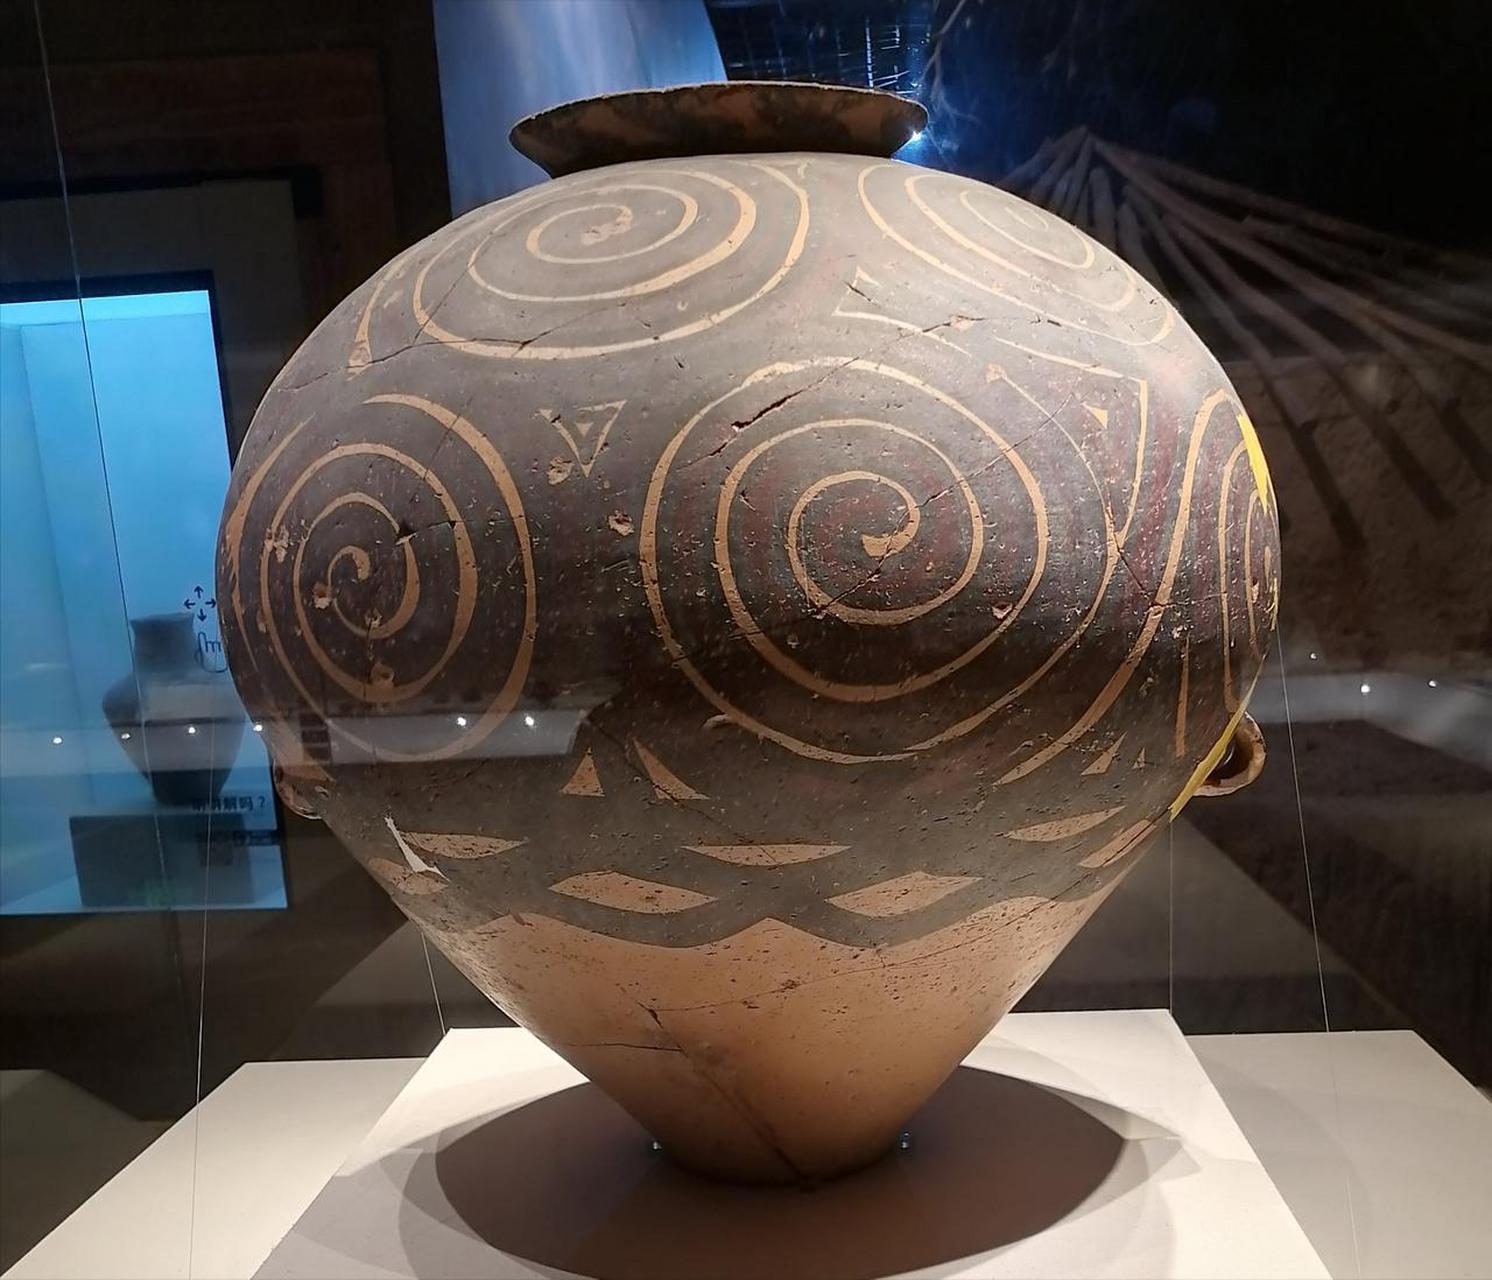 旋涡纹彩陶纹饰——4000多年前古人来自黄河母亲的灵感!